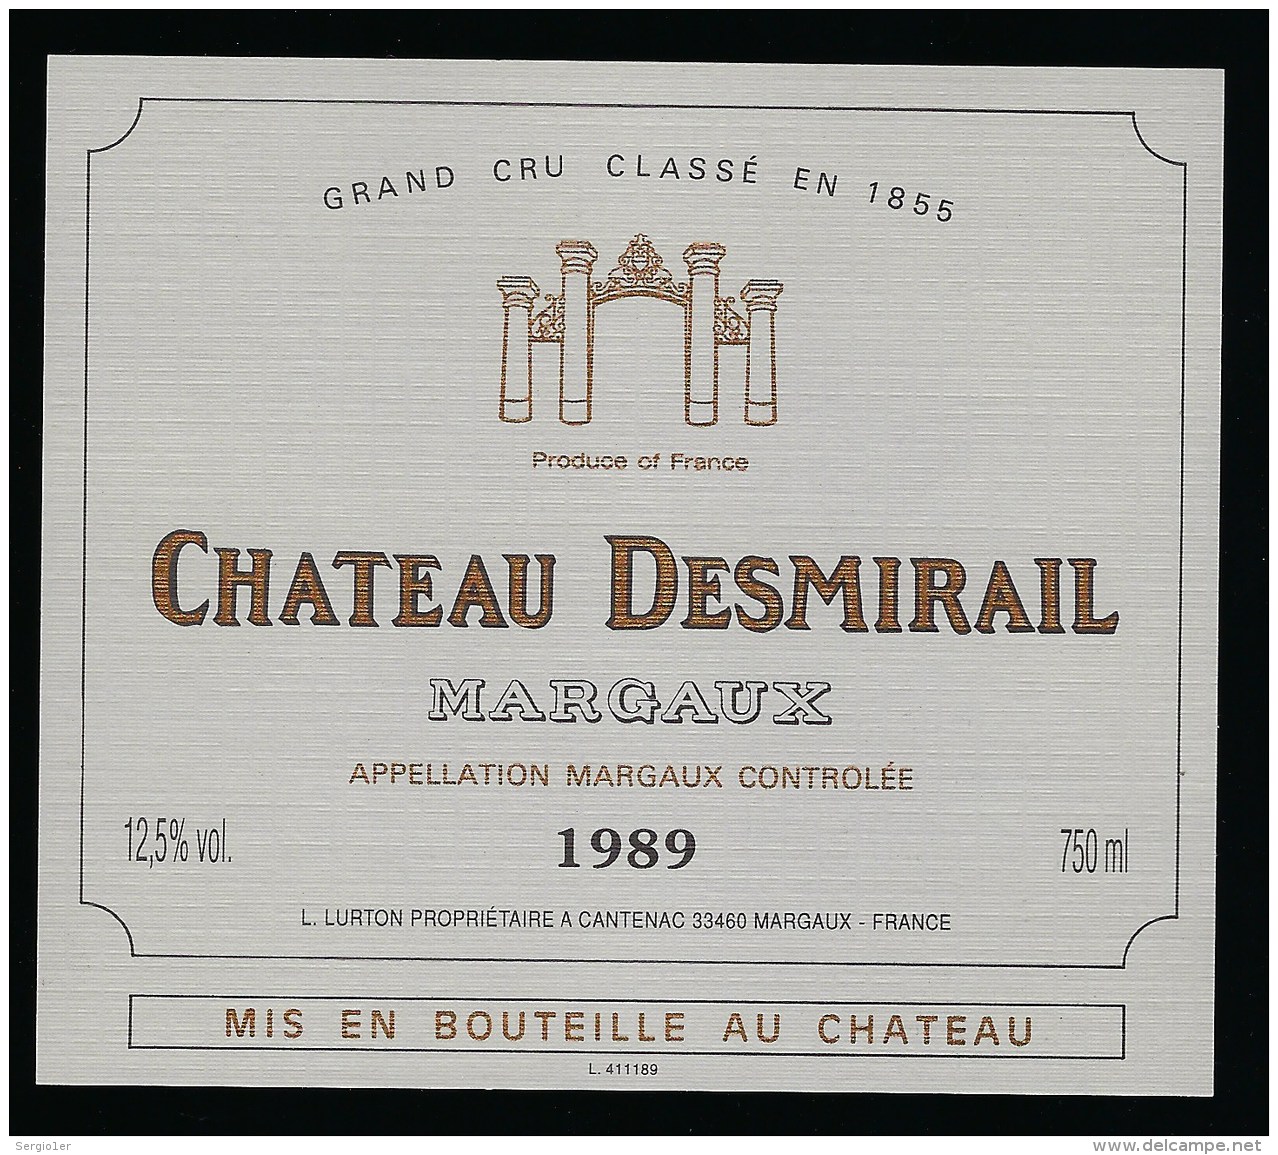 Etiquette Vin  Medoc   Chateau  Desmirail  Margaux 1989 Grand Cru Classé En 1855  L Lurton Propriétaire - Bordeaux